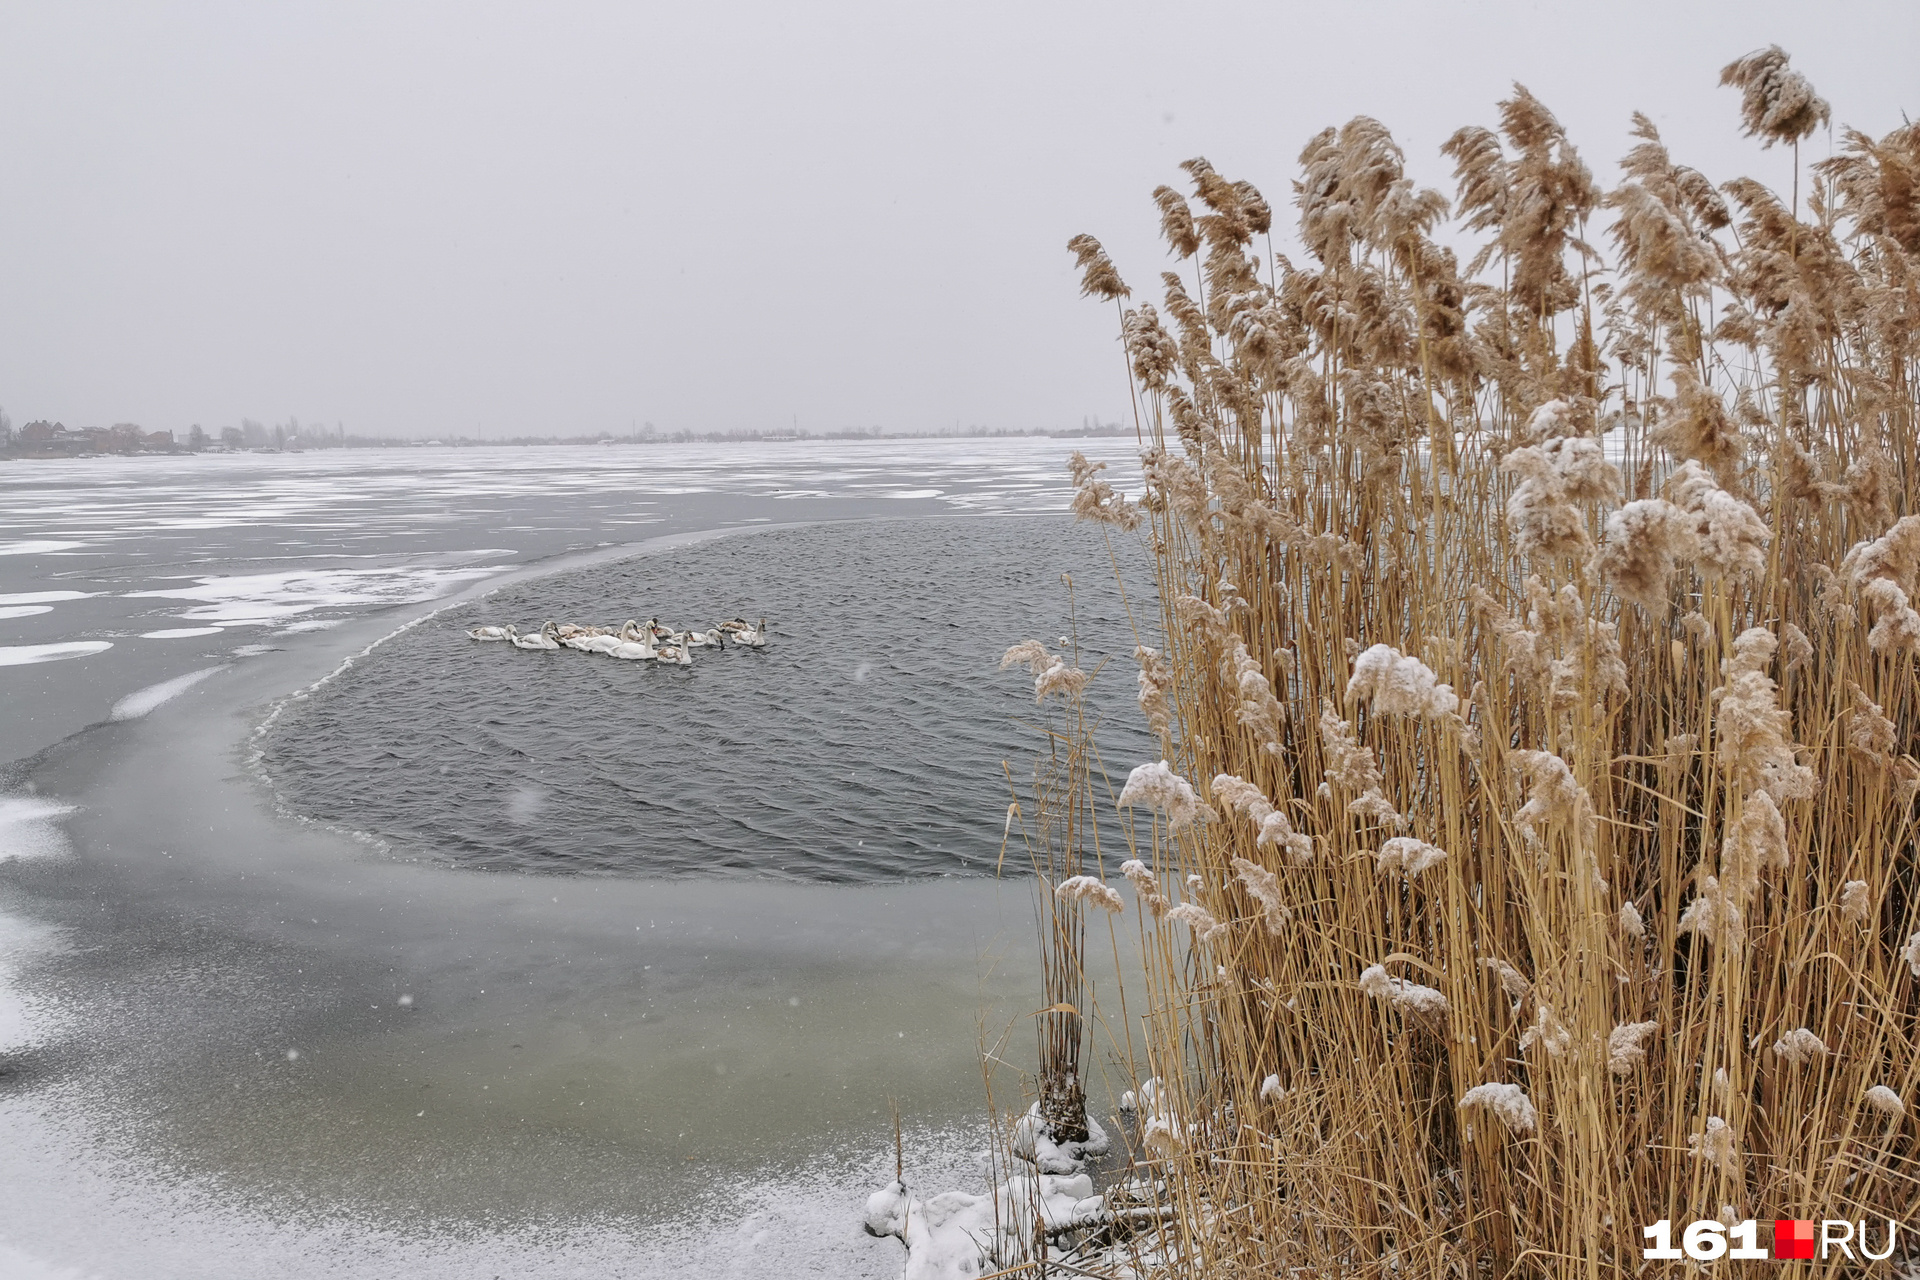 Местные жители пробили небольшую полынью во льду, чтобы птицы могли выбраться на берег